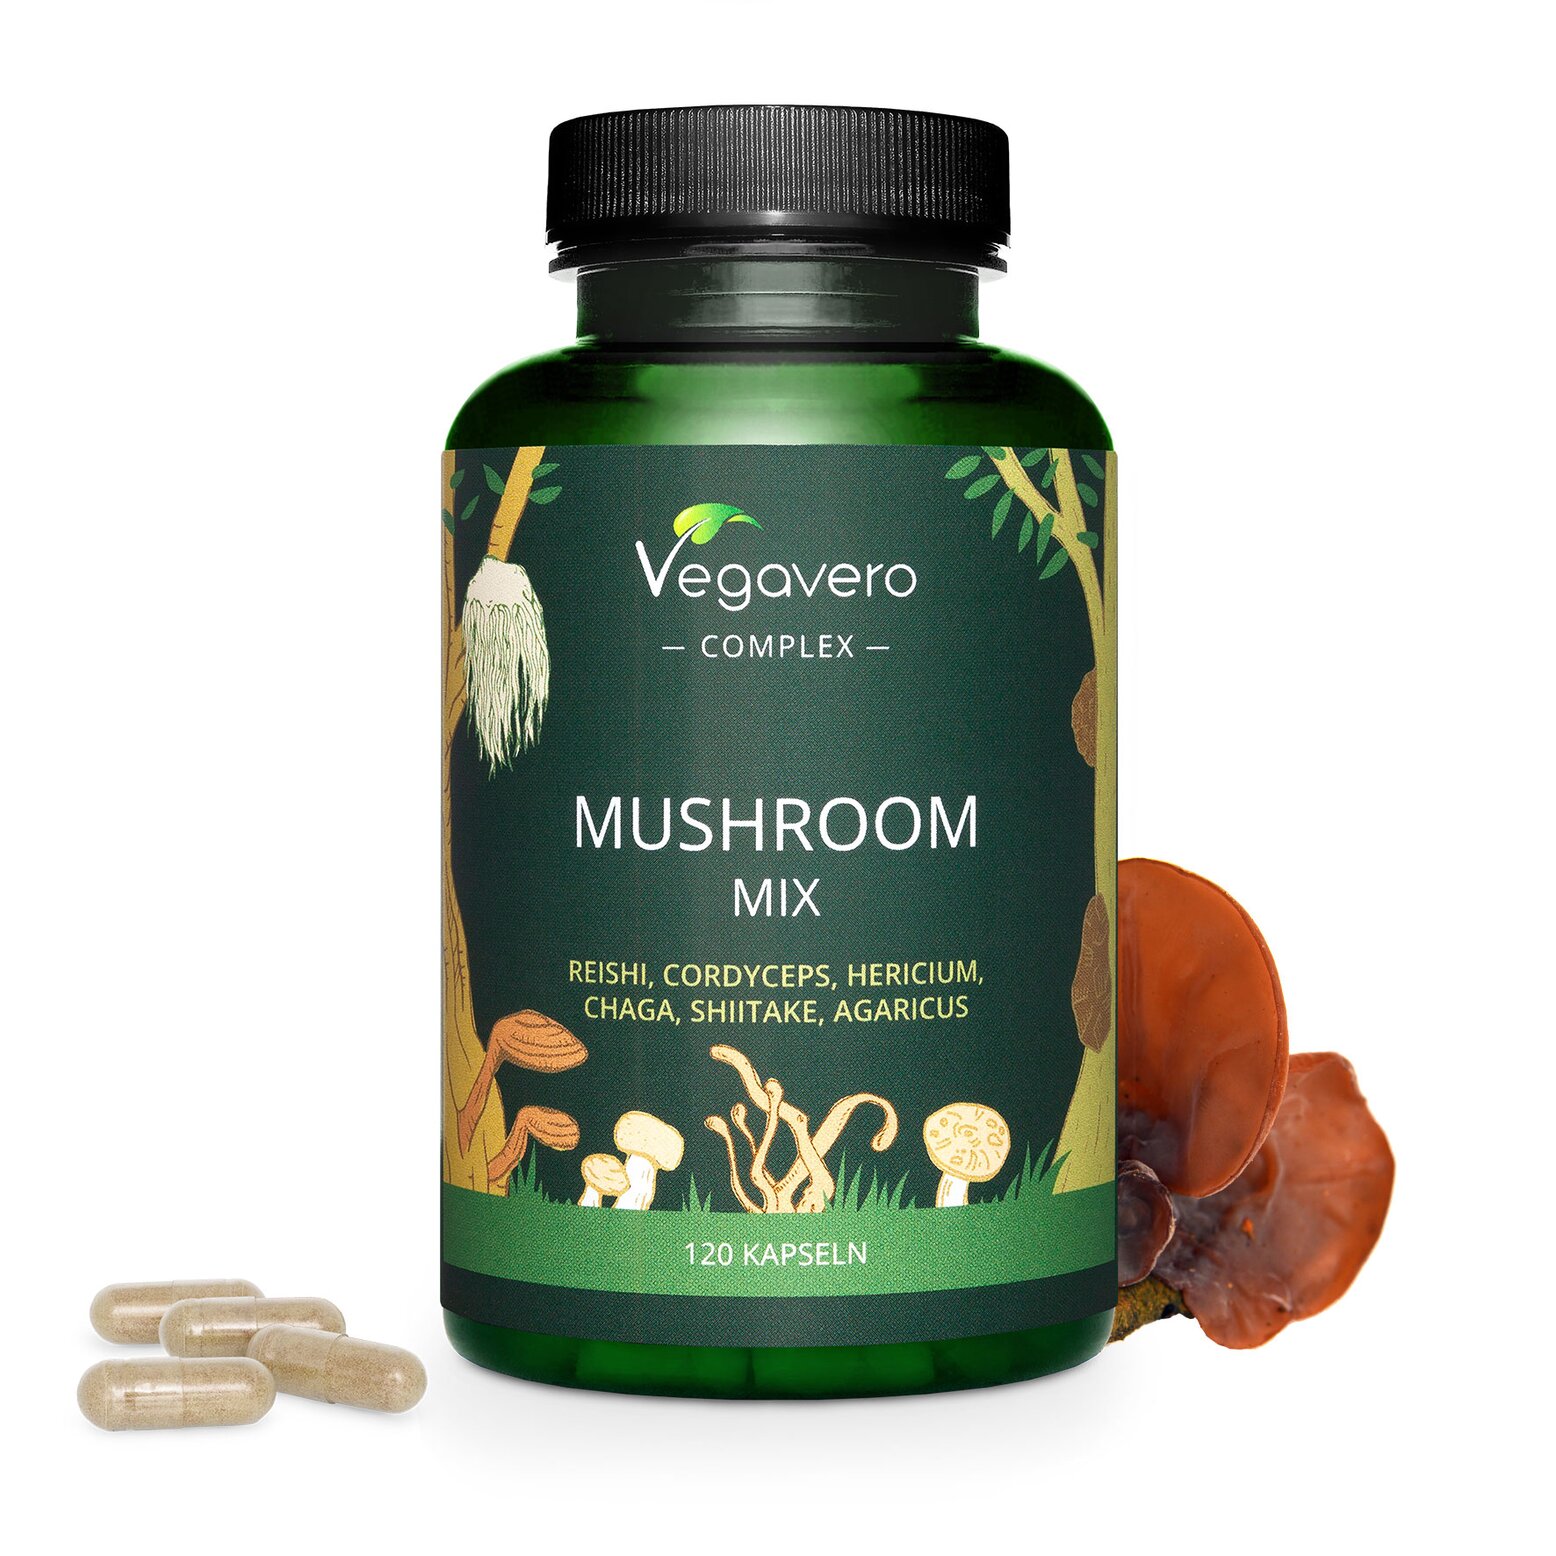 Vegavero Mushroom Mix | 120 Kapseln | Reishi, Cordyceps, Hericium, Chaga, Shiitake, Agaricus | vegan